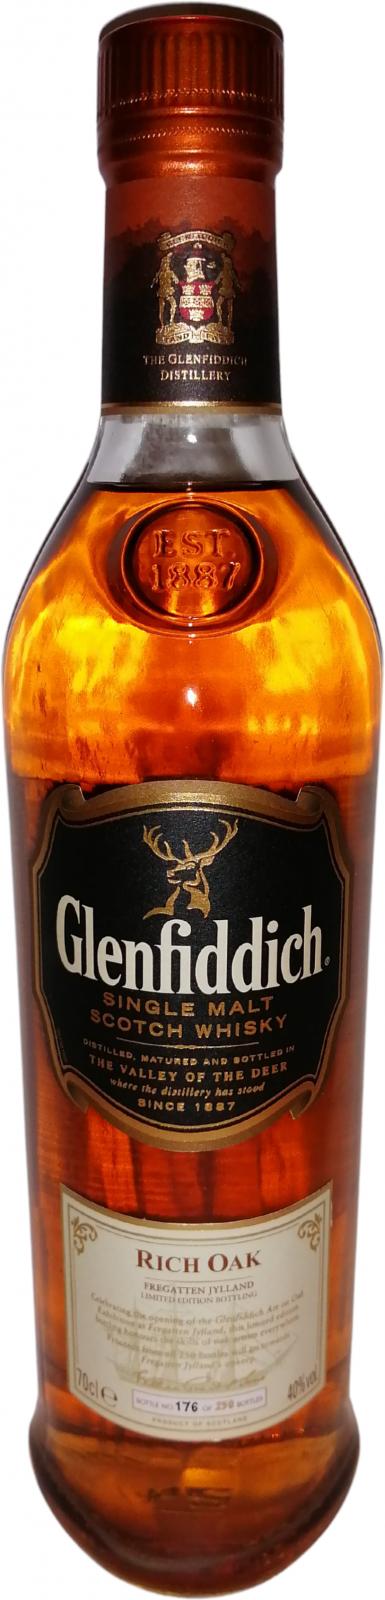 Glenfiddich 14yo Rich Oak Fregatten Jylland 40% 700ml